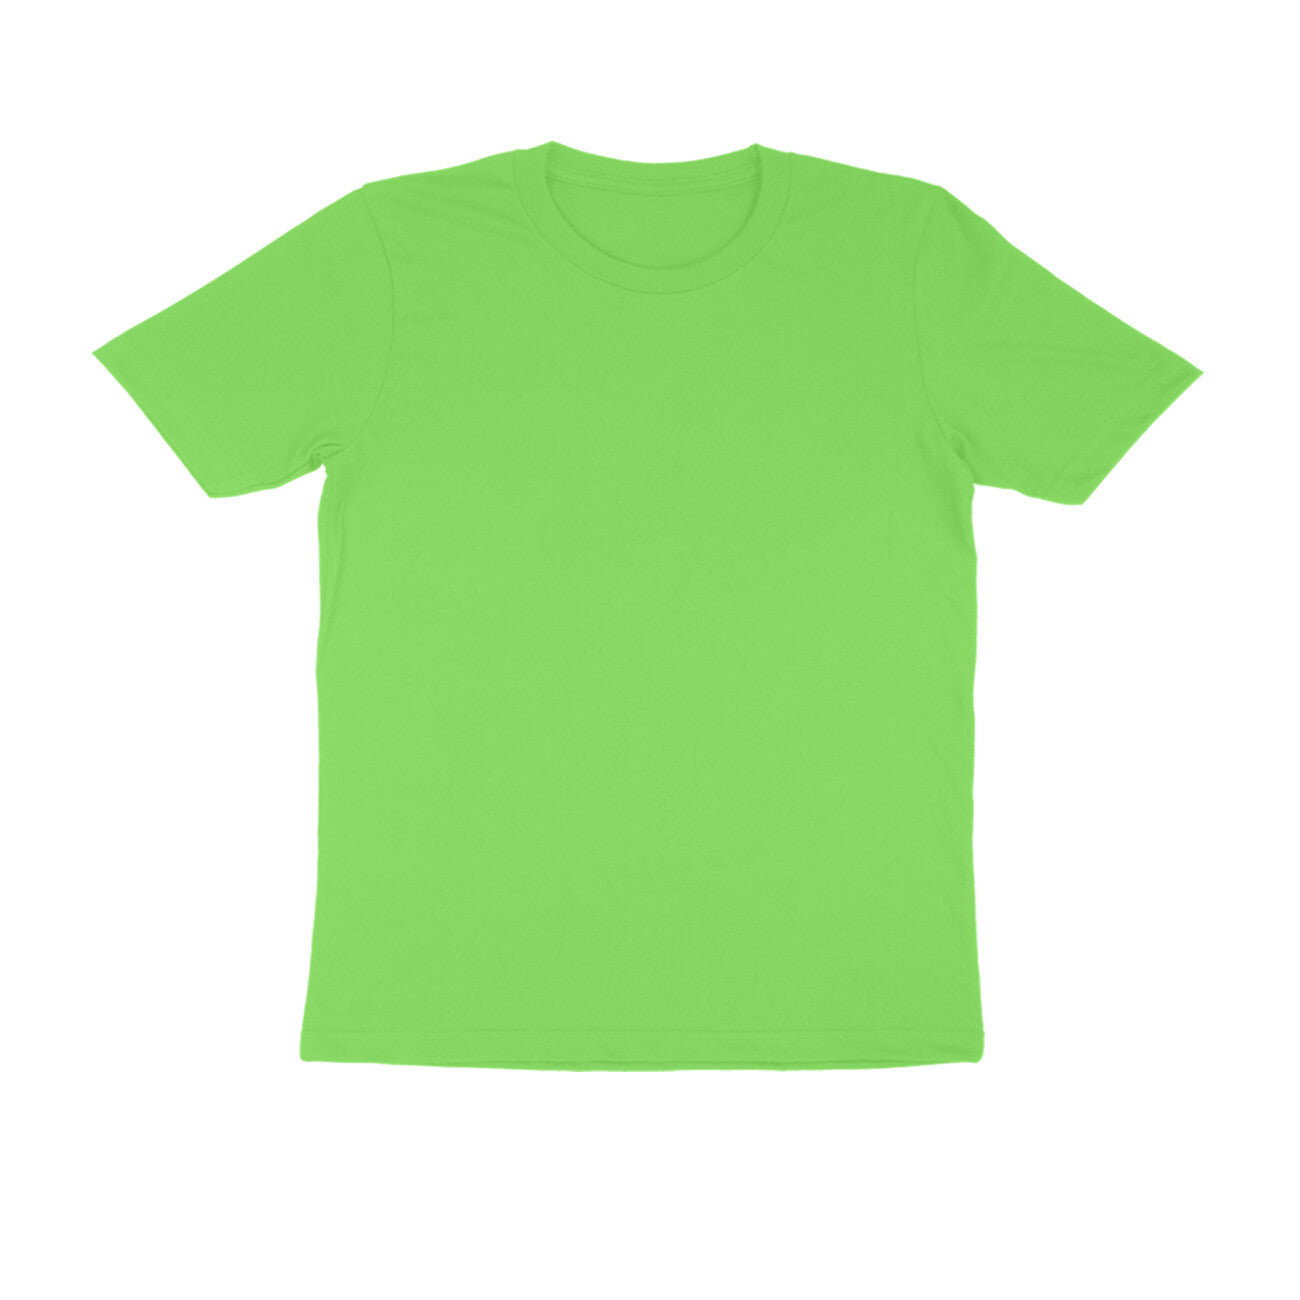 Liril Green Plain T-Shirt for Men